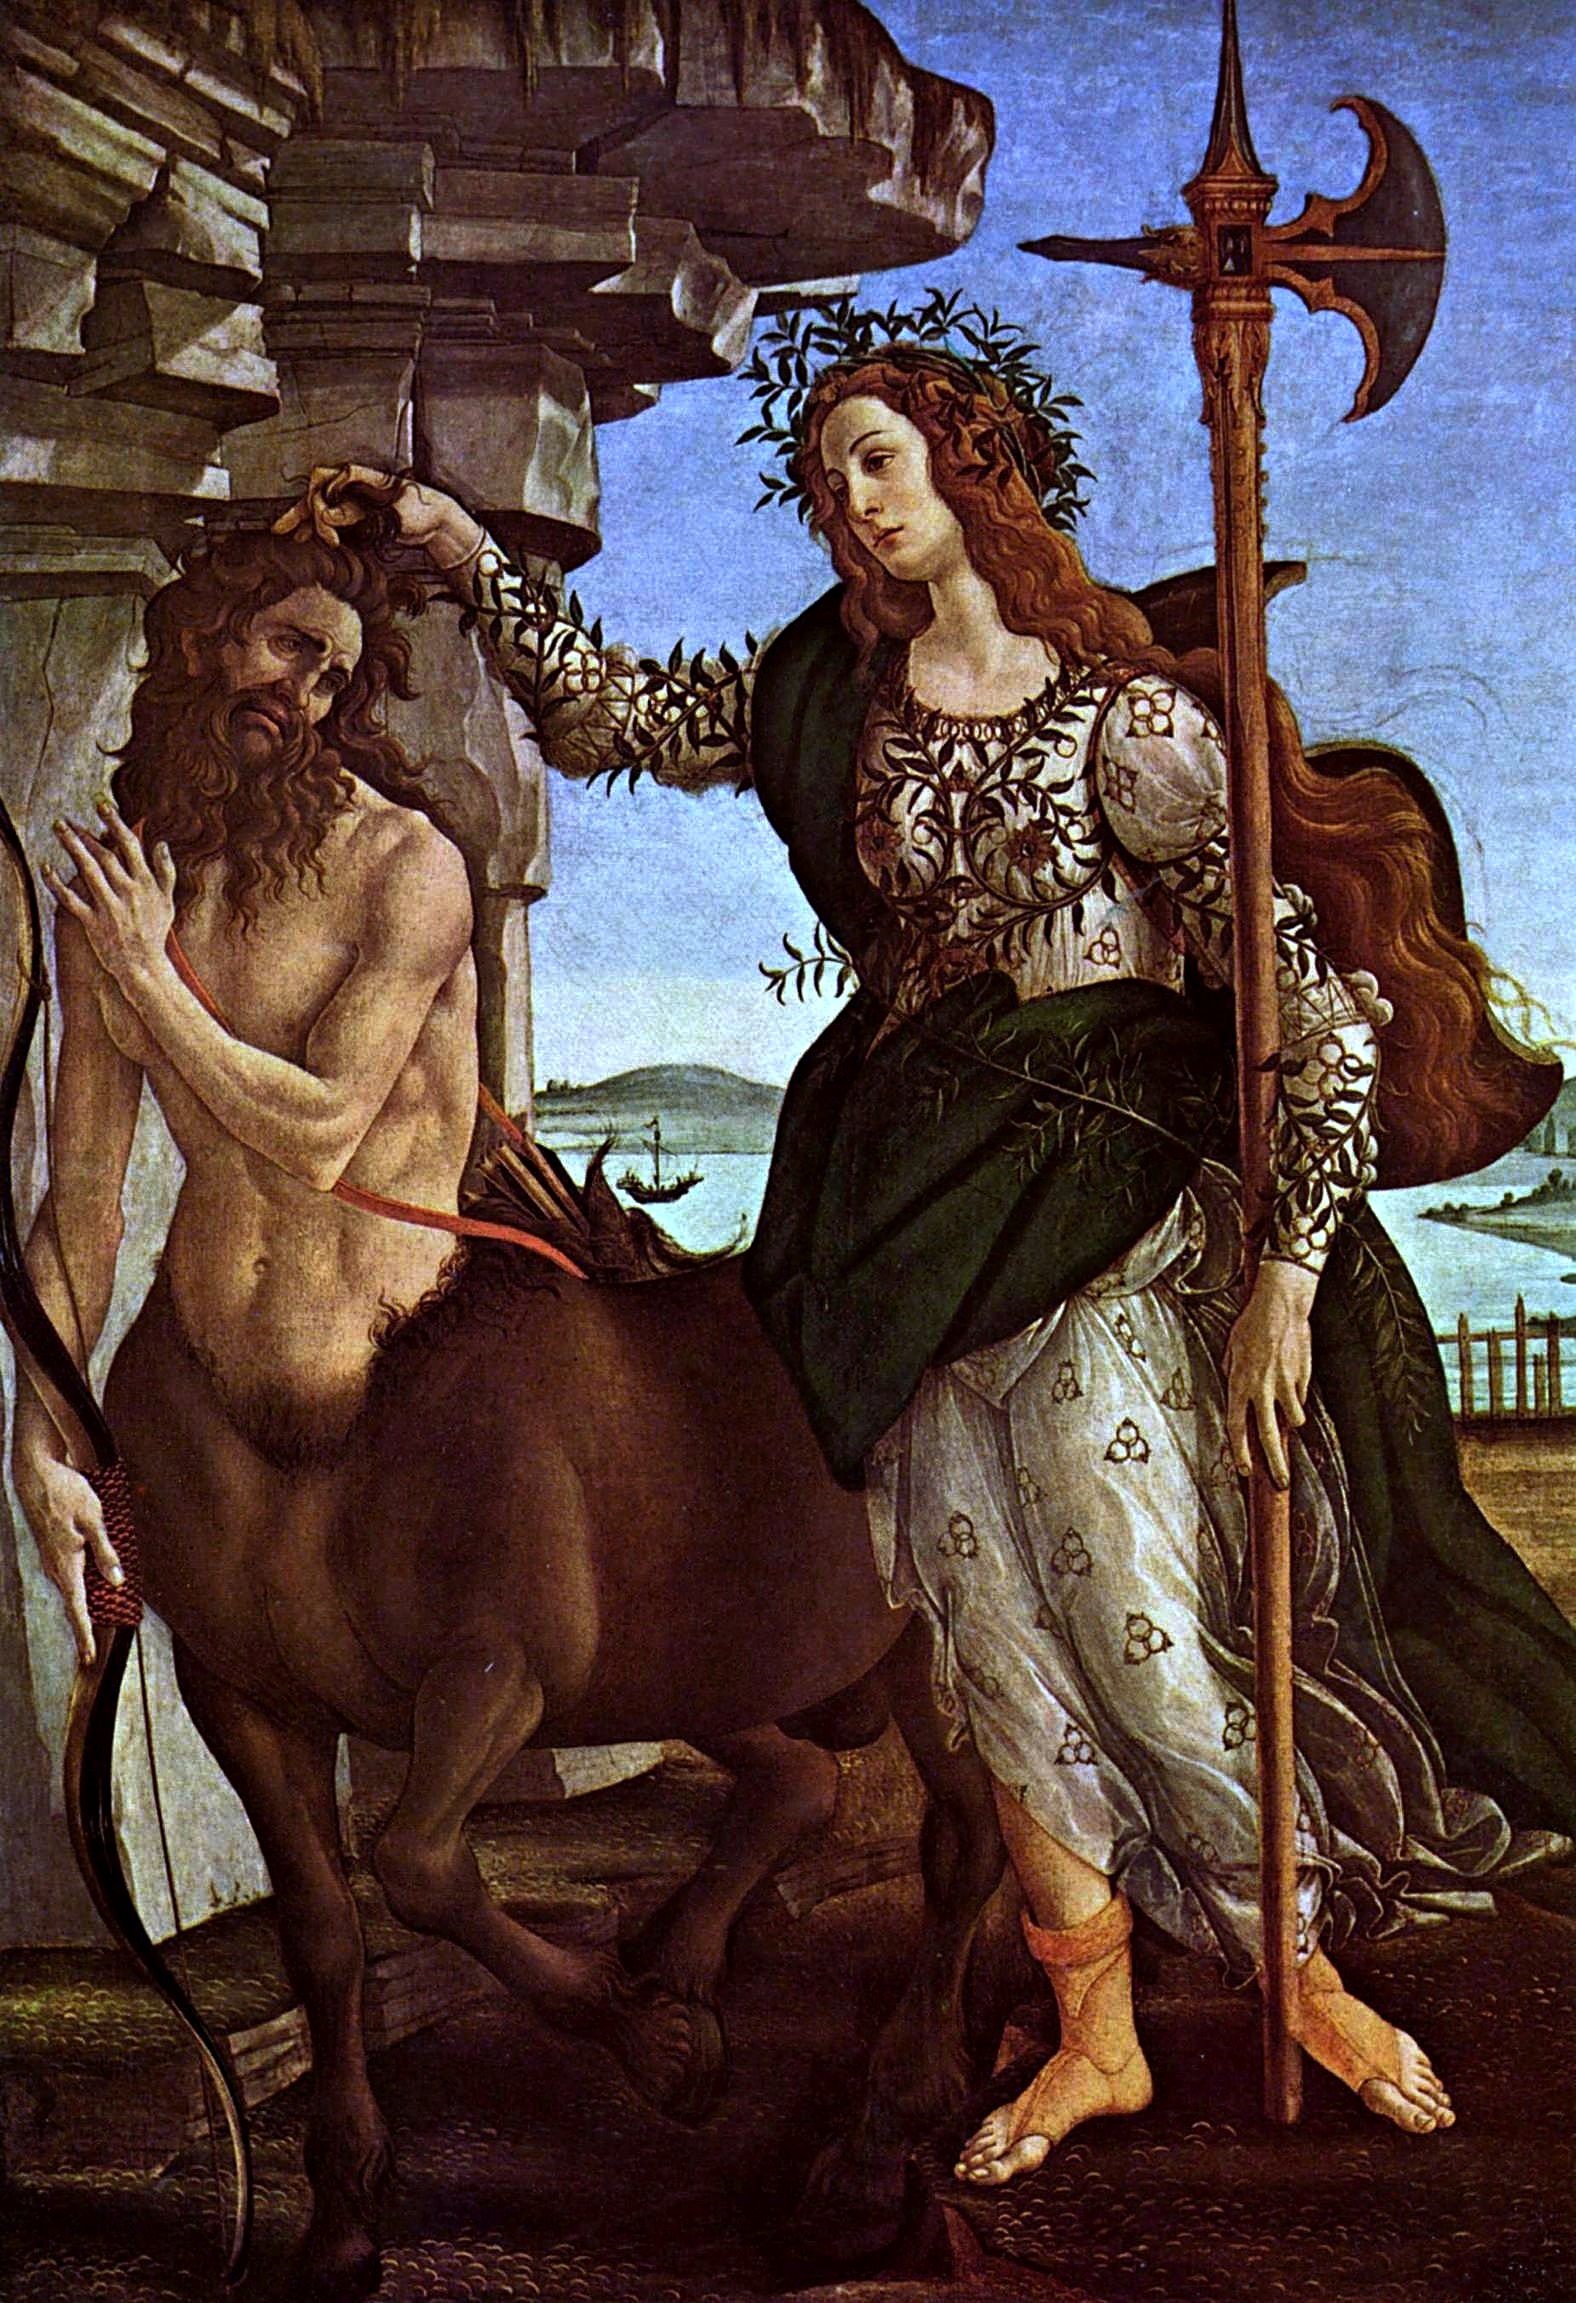 Athena and Centaur by Sandro Botticelli - 1482 - 207 x 148 cm Galleria degli Uffizi